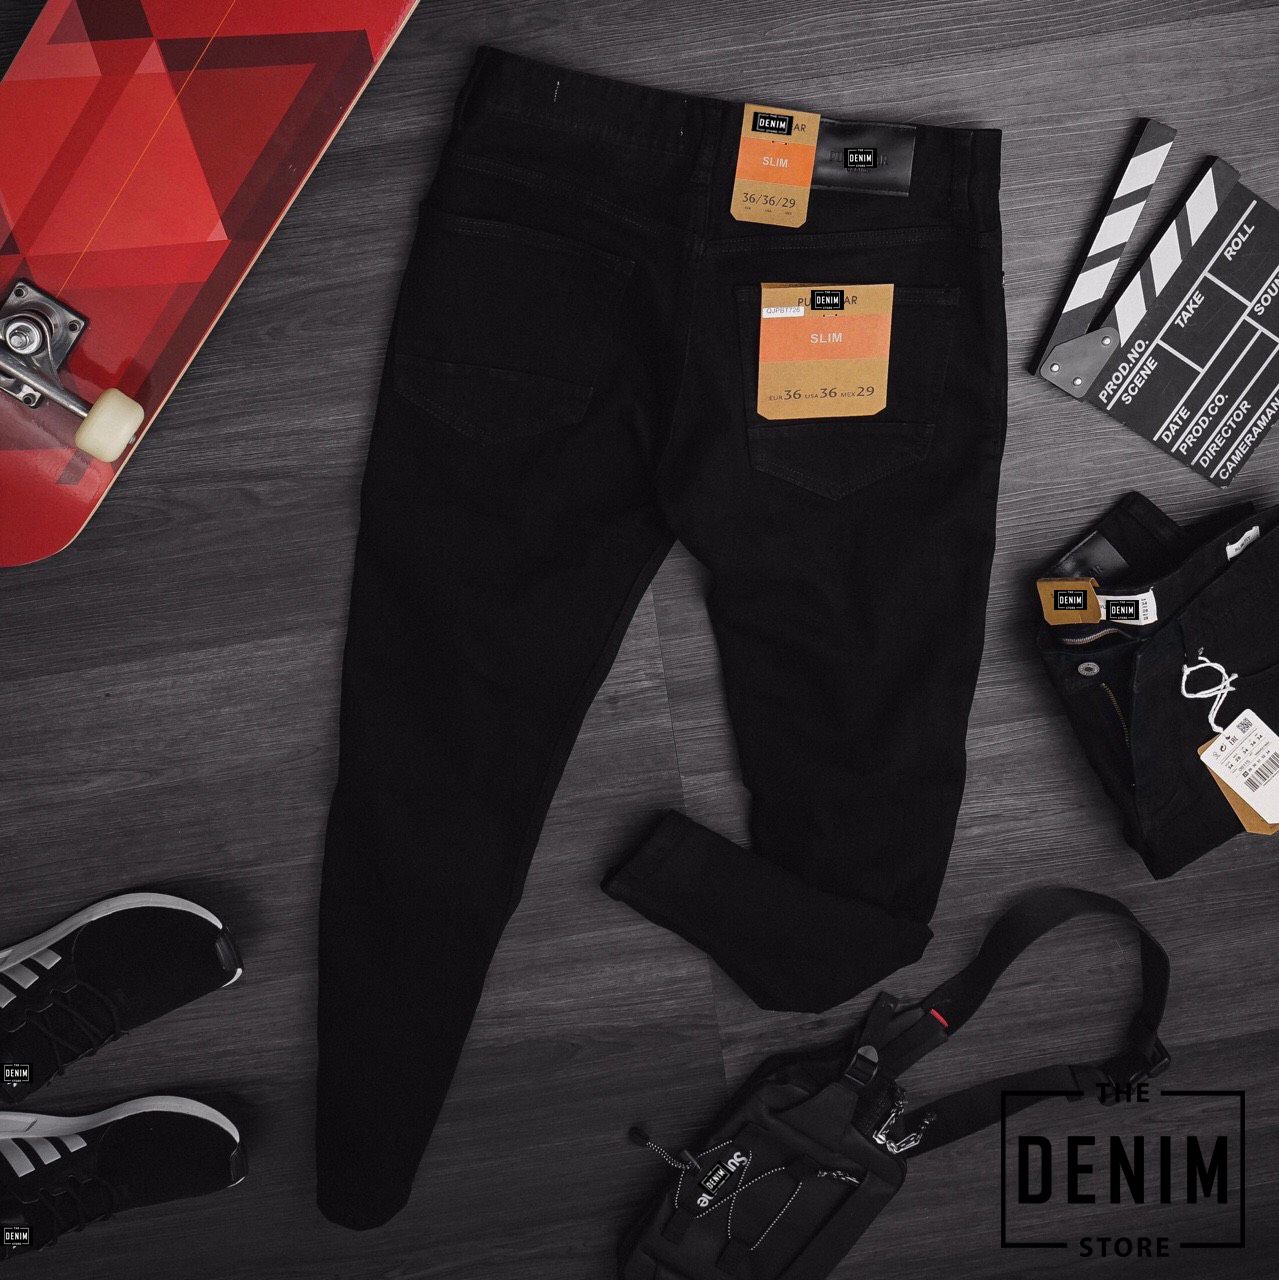 THE DENIM STORE - Chuyên quần áo nam hàng hiệu xuất khẩu - 8